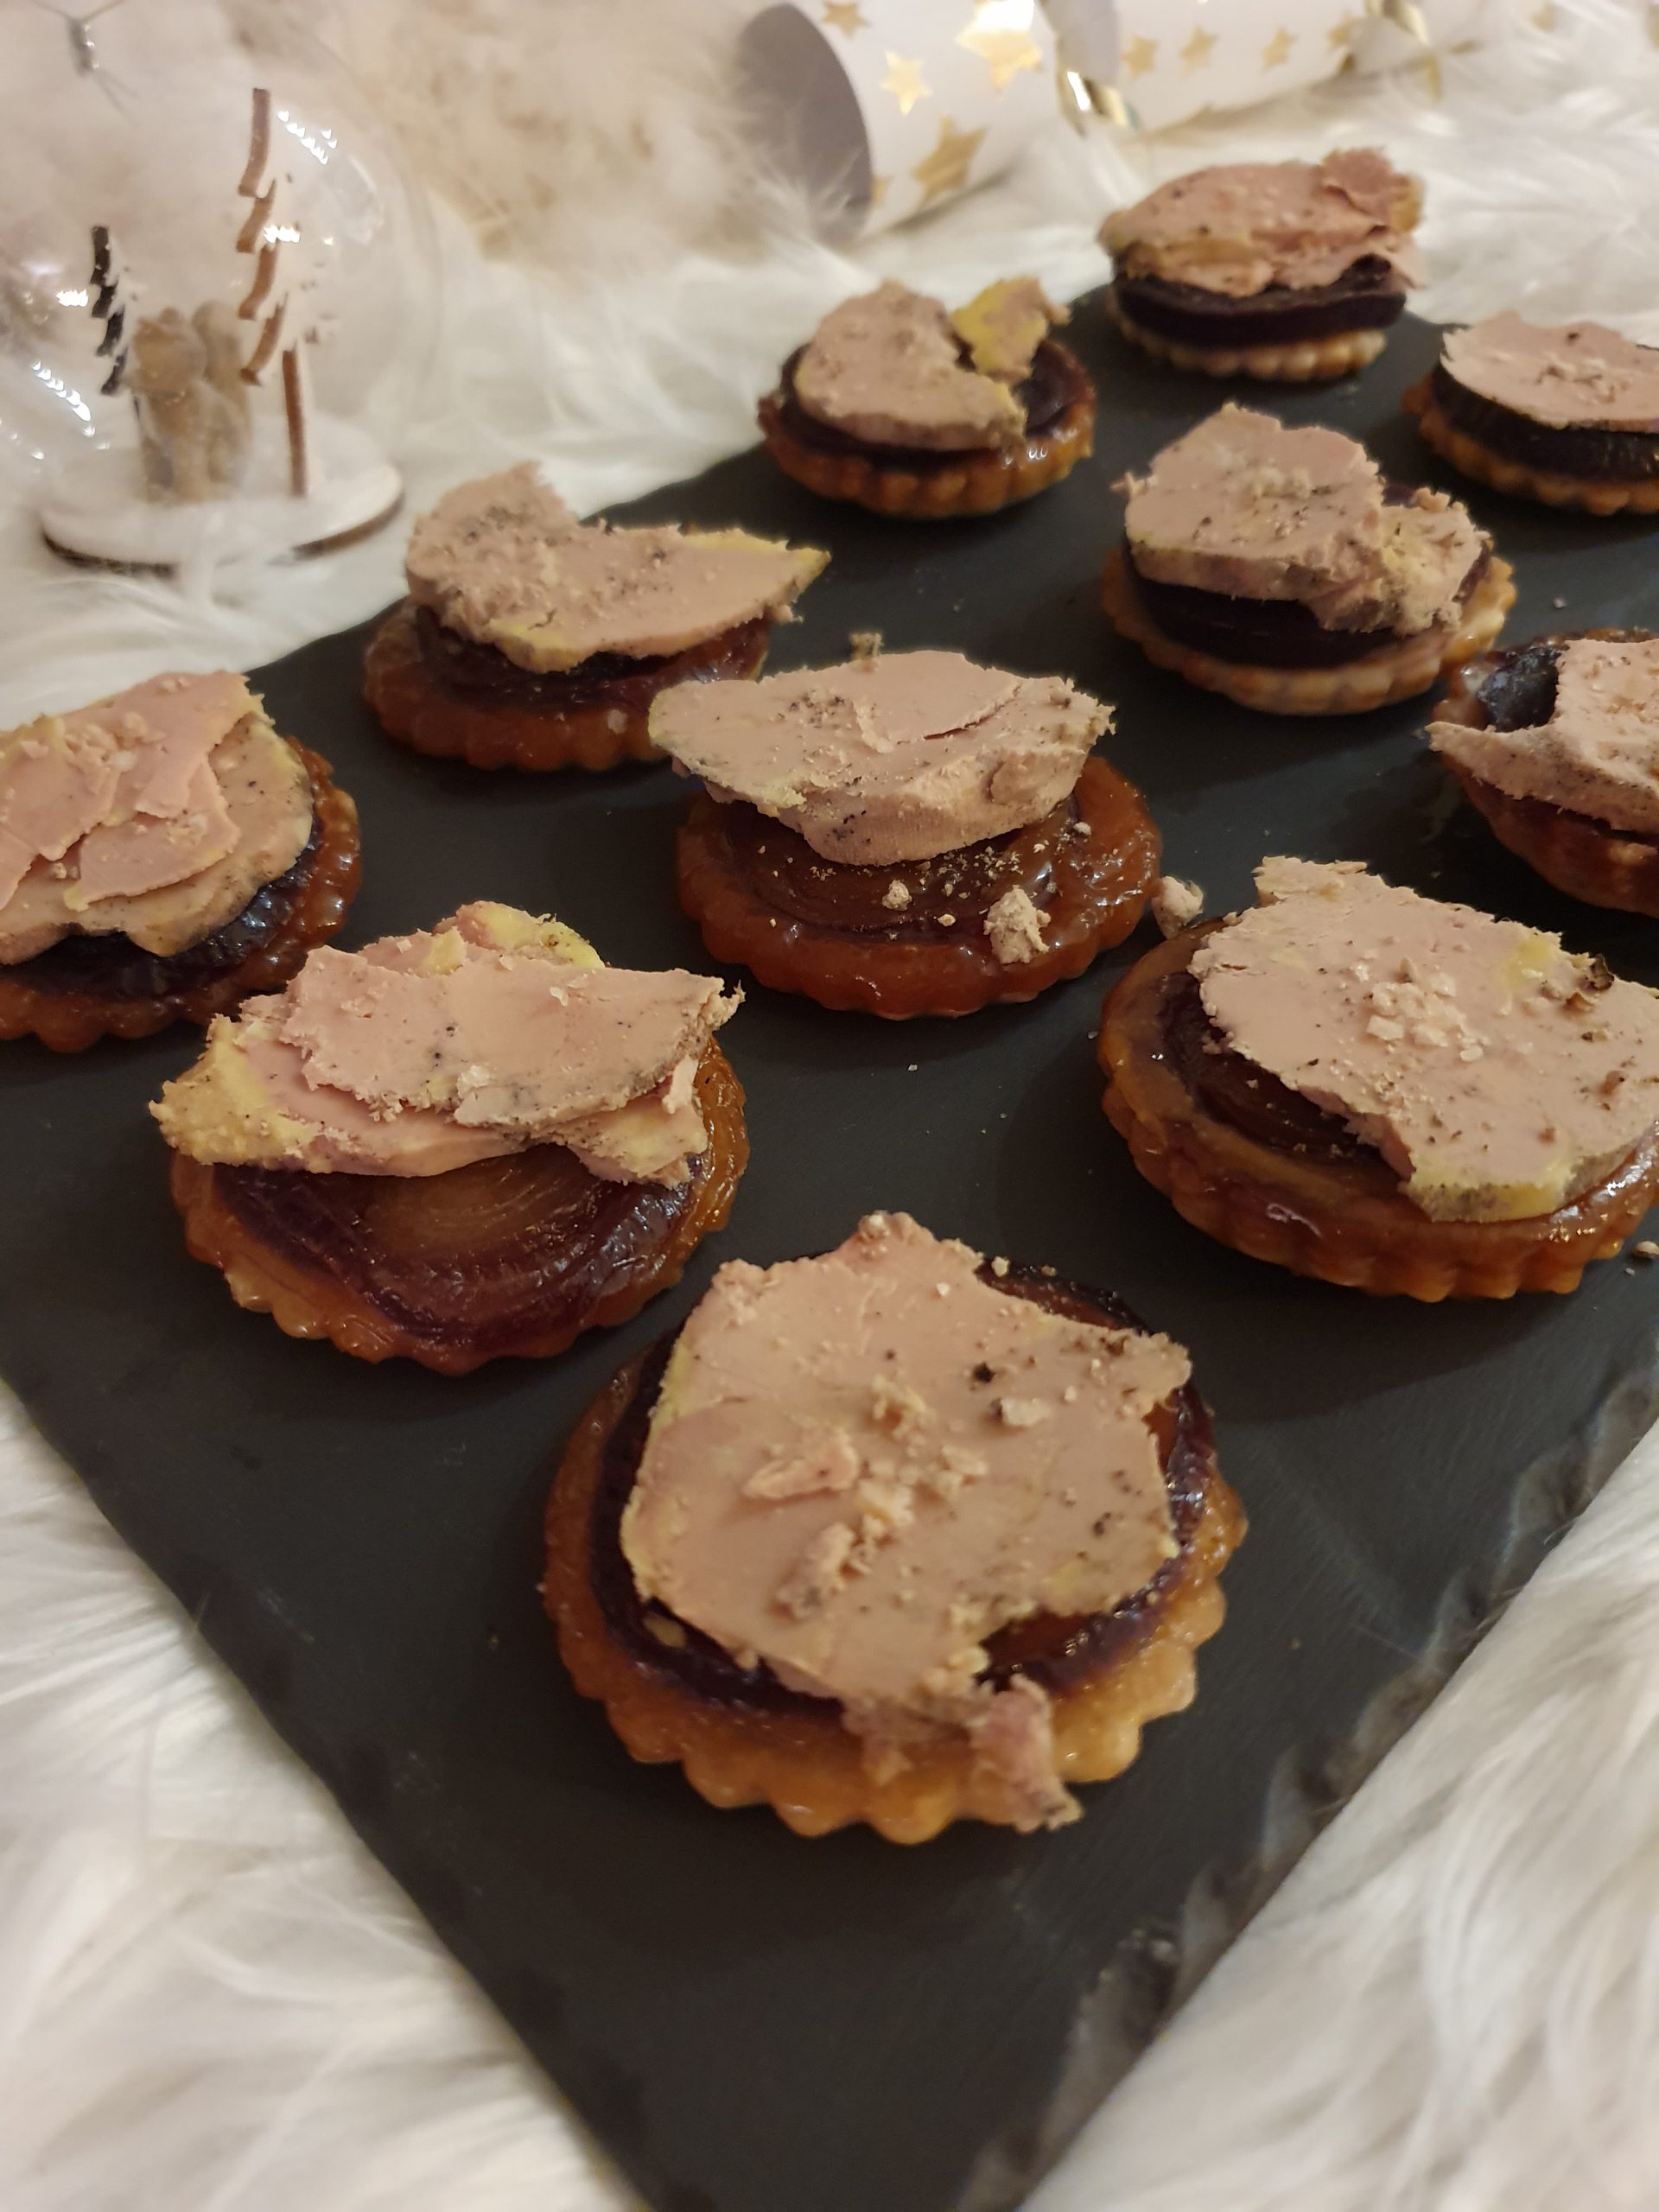 Tatins d’oignons au foie gras